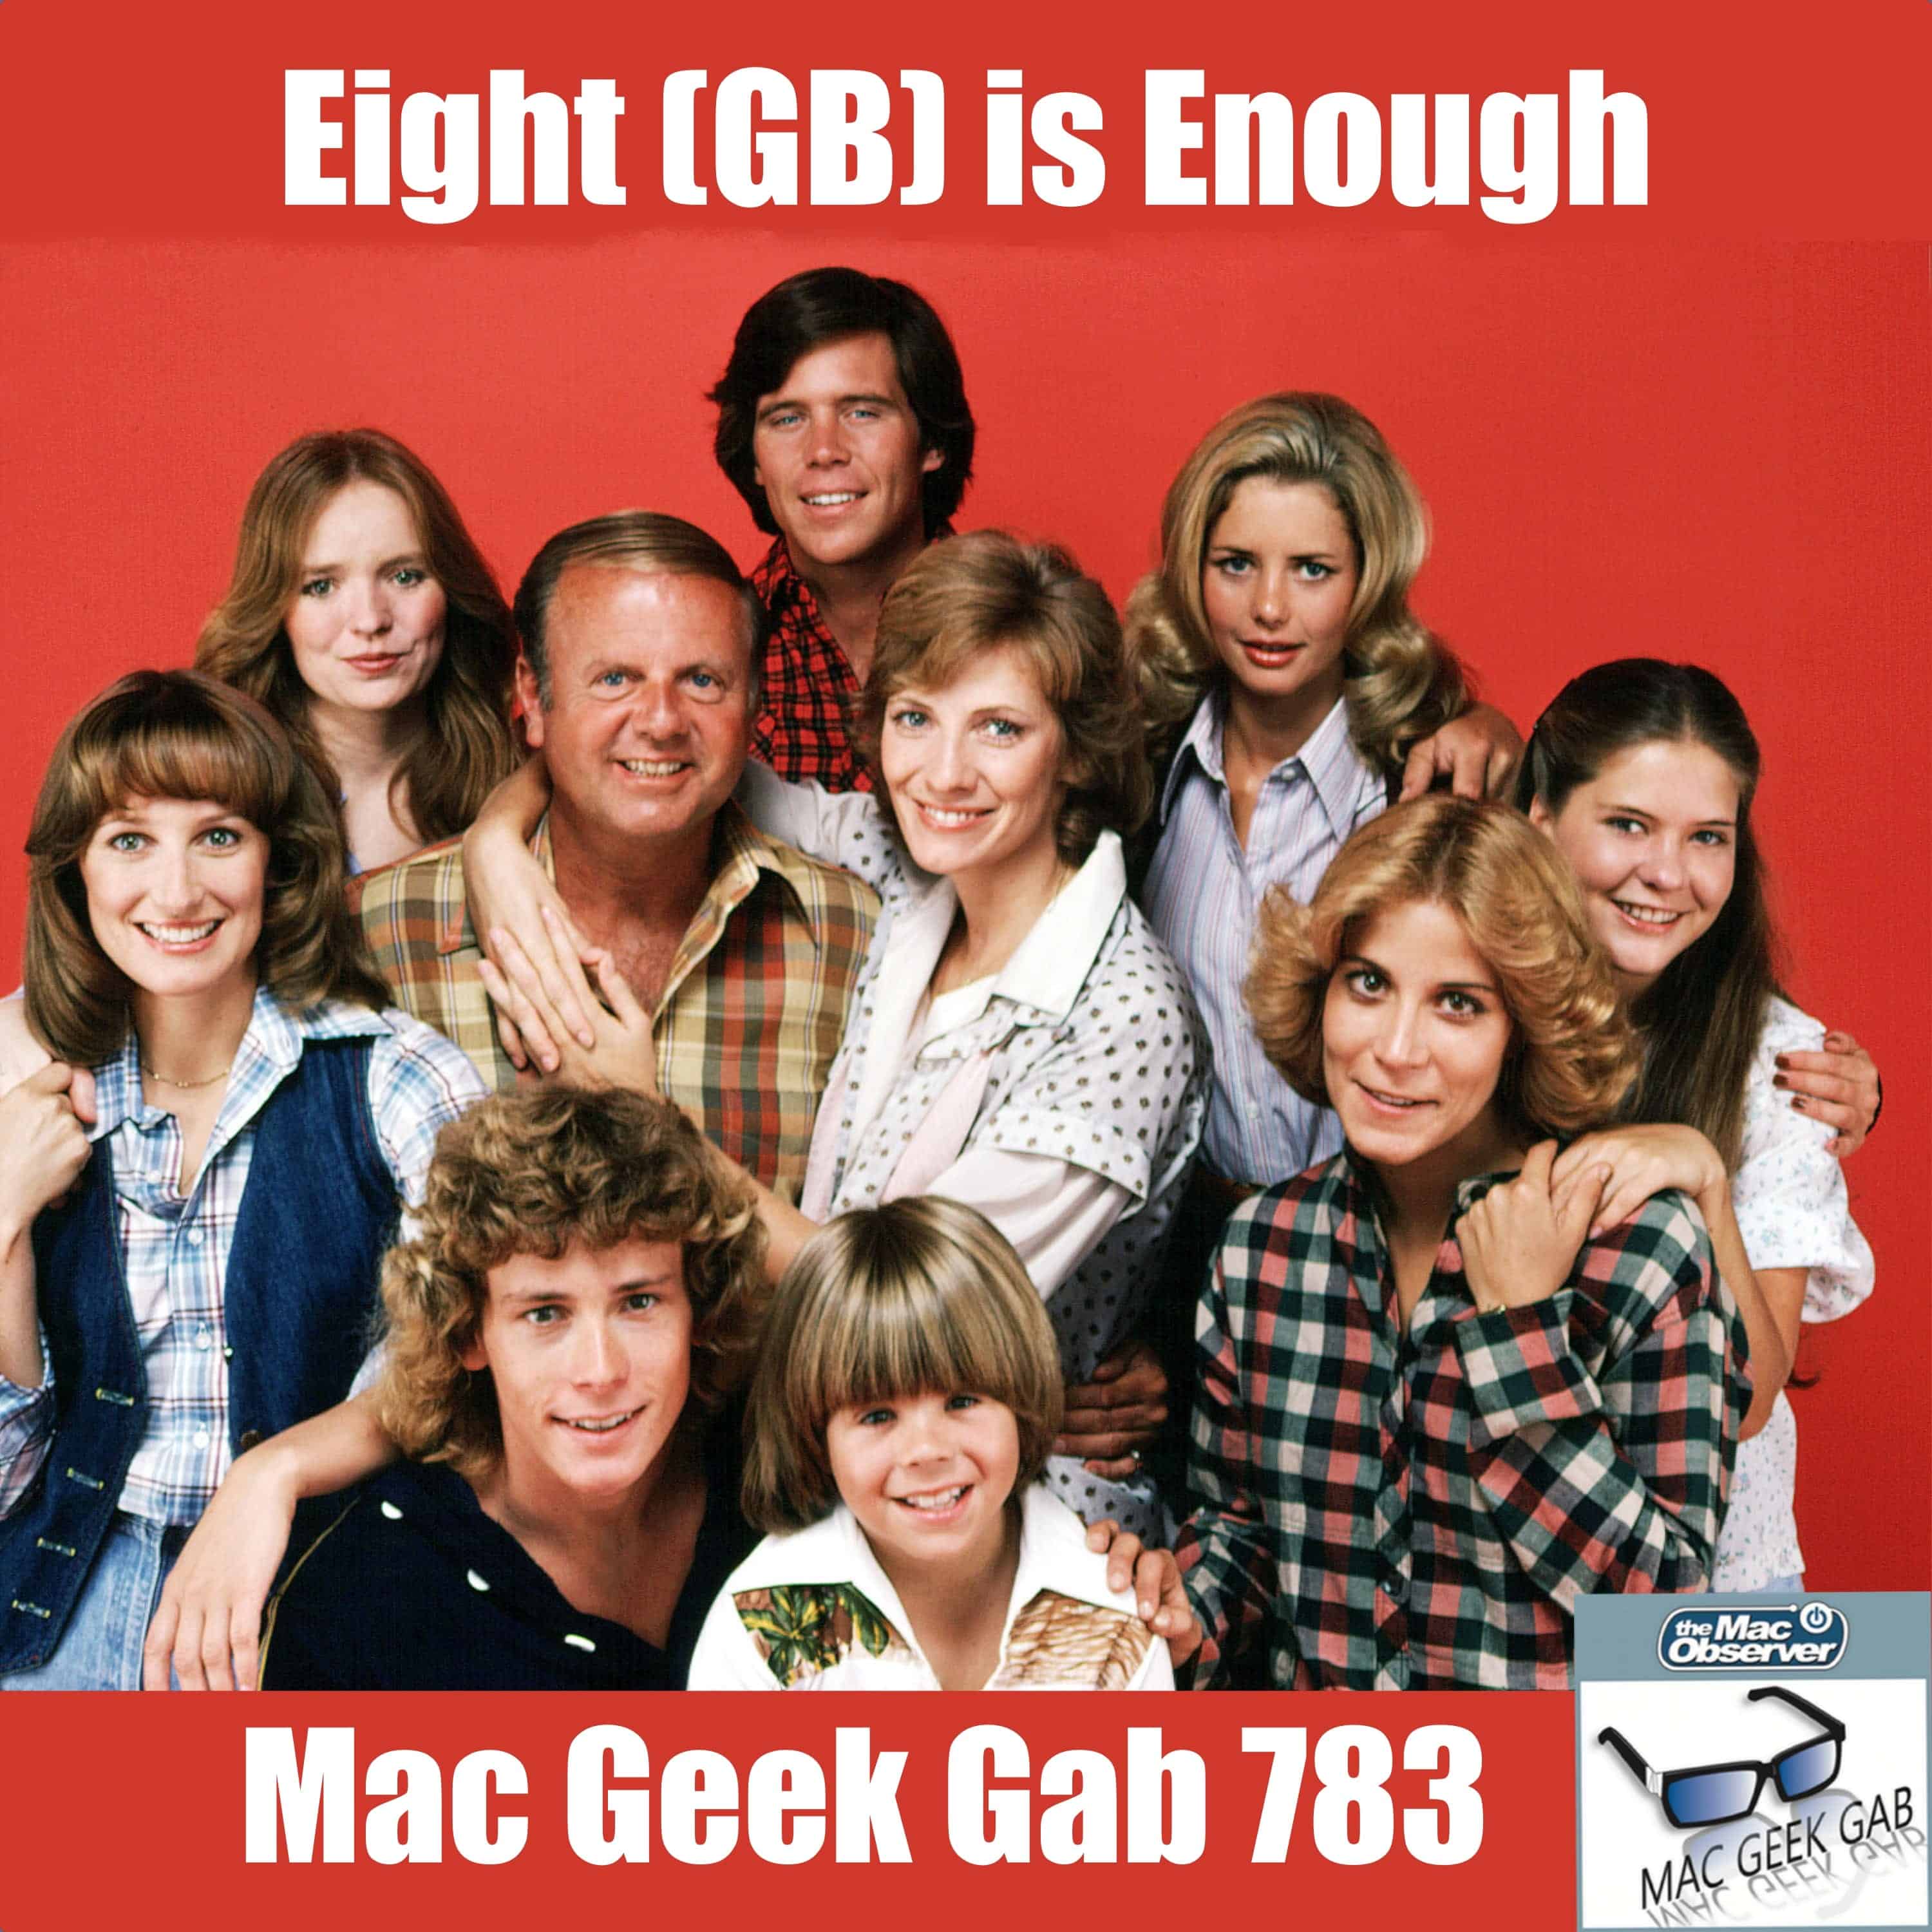 Eight (GB) is Enough – Mac Geek Gab 783